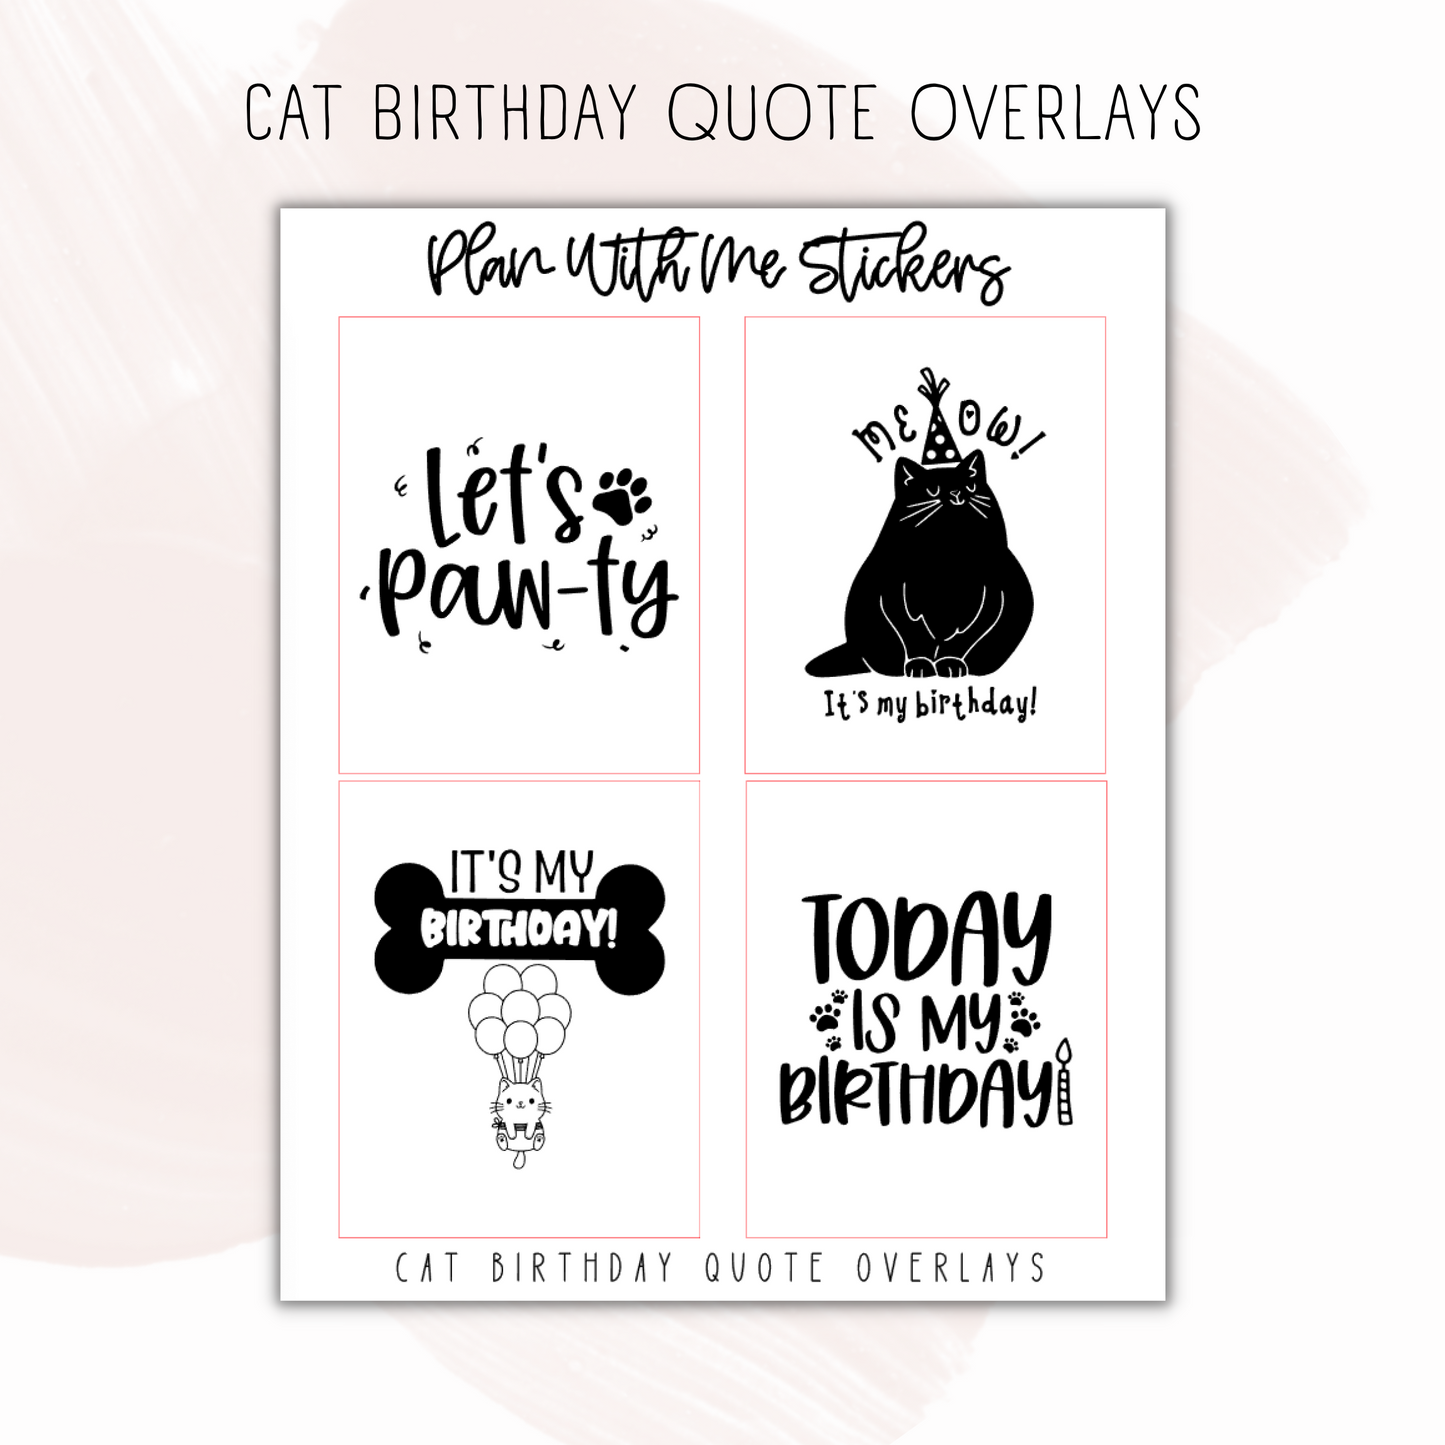 Cat Birthday Quote Overlays